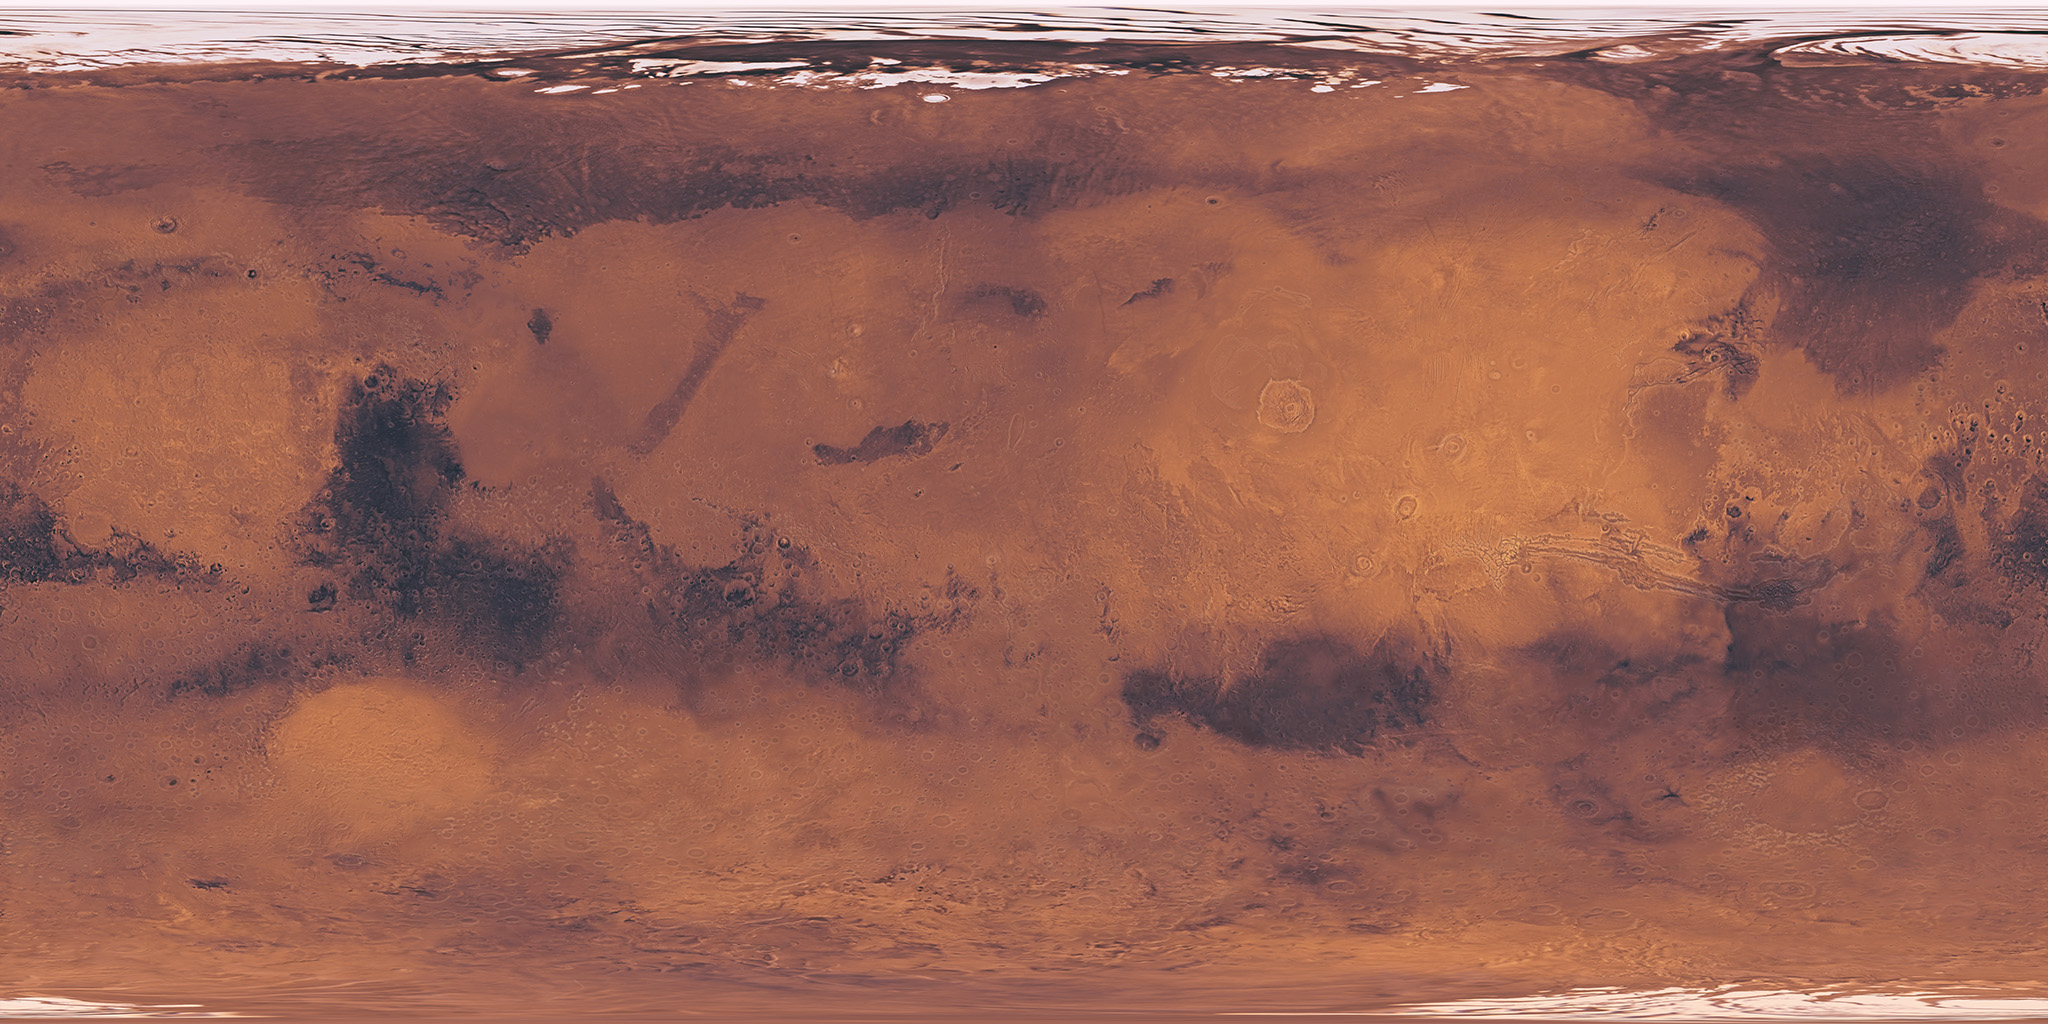 marstaki-su-varligiyla-ilgili-yeni-teori-3 Mars'taki su varlığıyla ilgili yeni teori Genel Haberler 